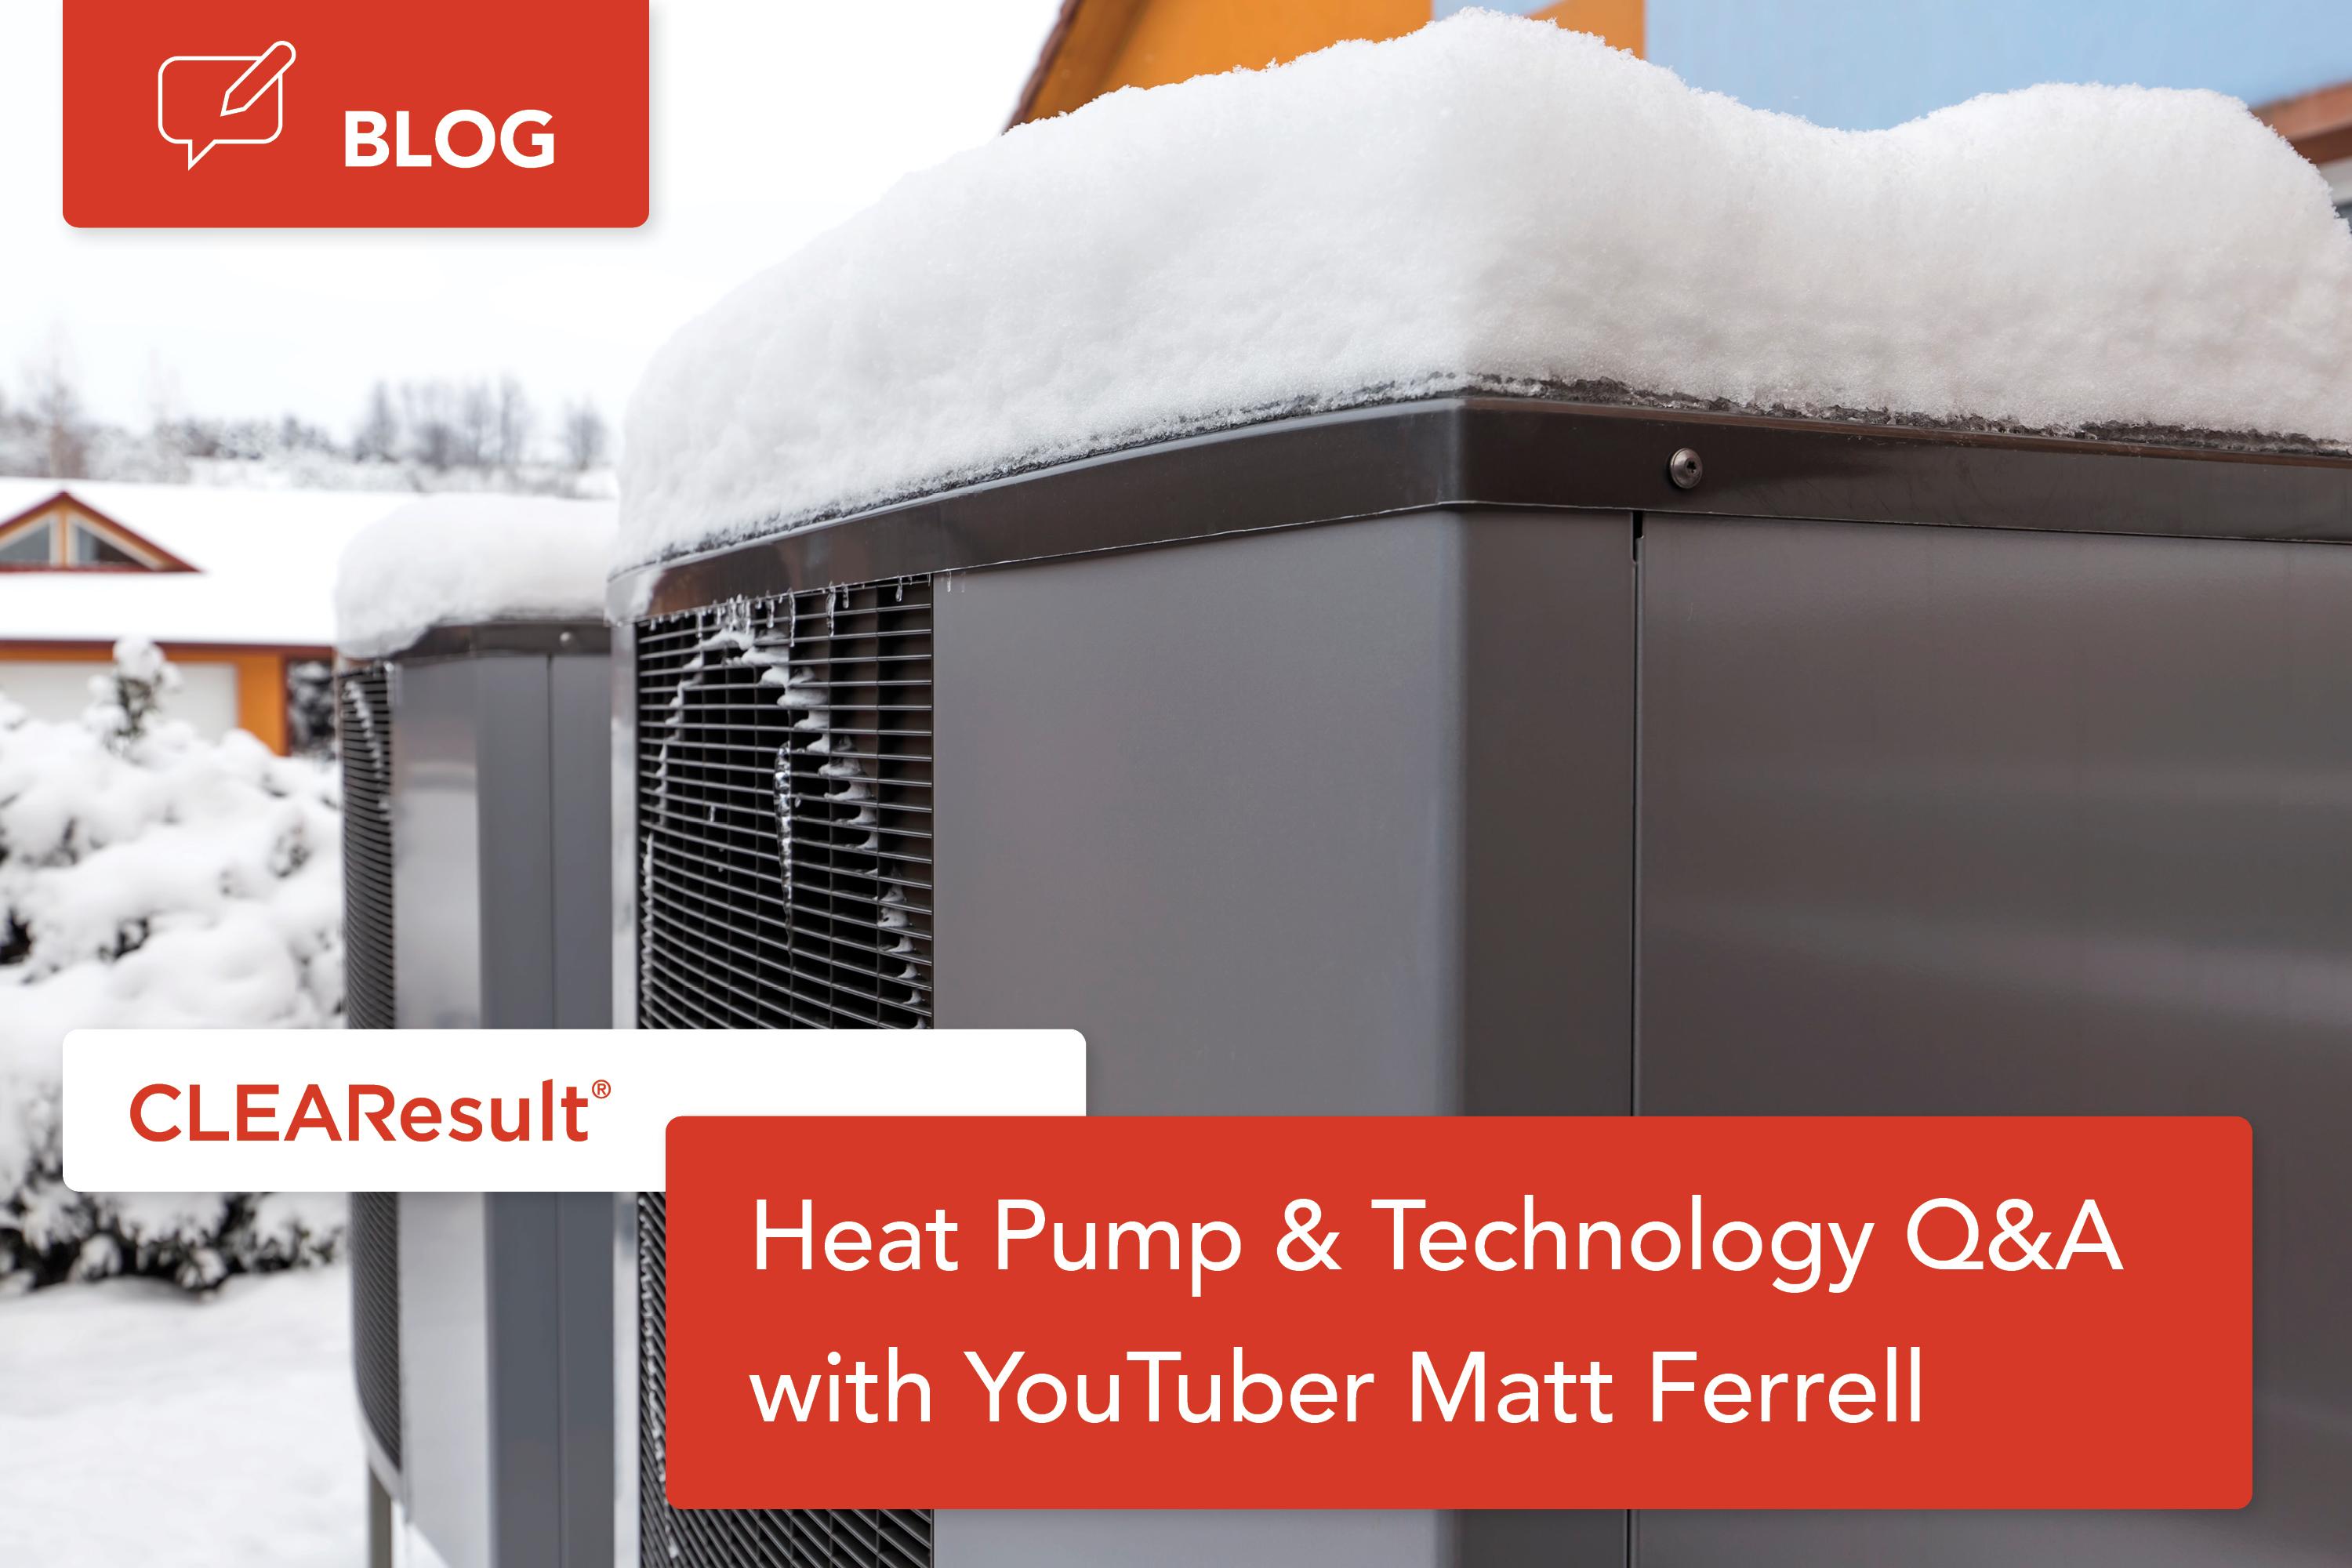 Heat pump & Technology Q&A with YouTuber Matt Ferrell